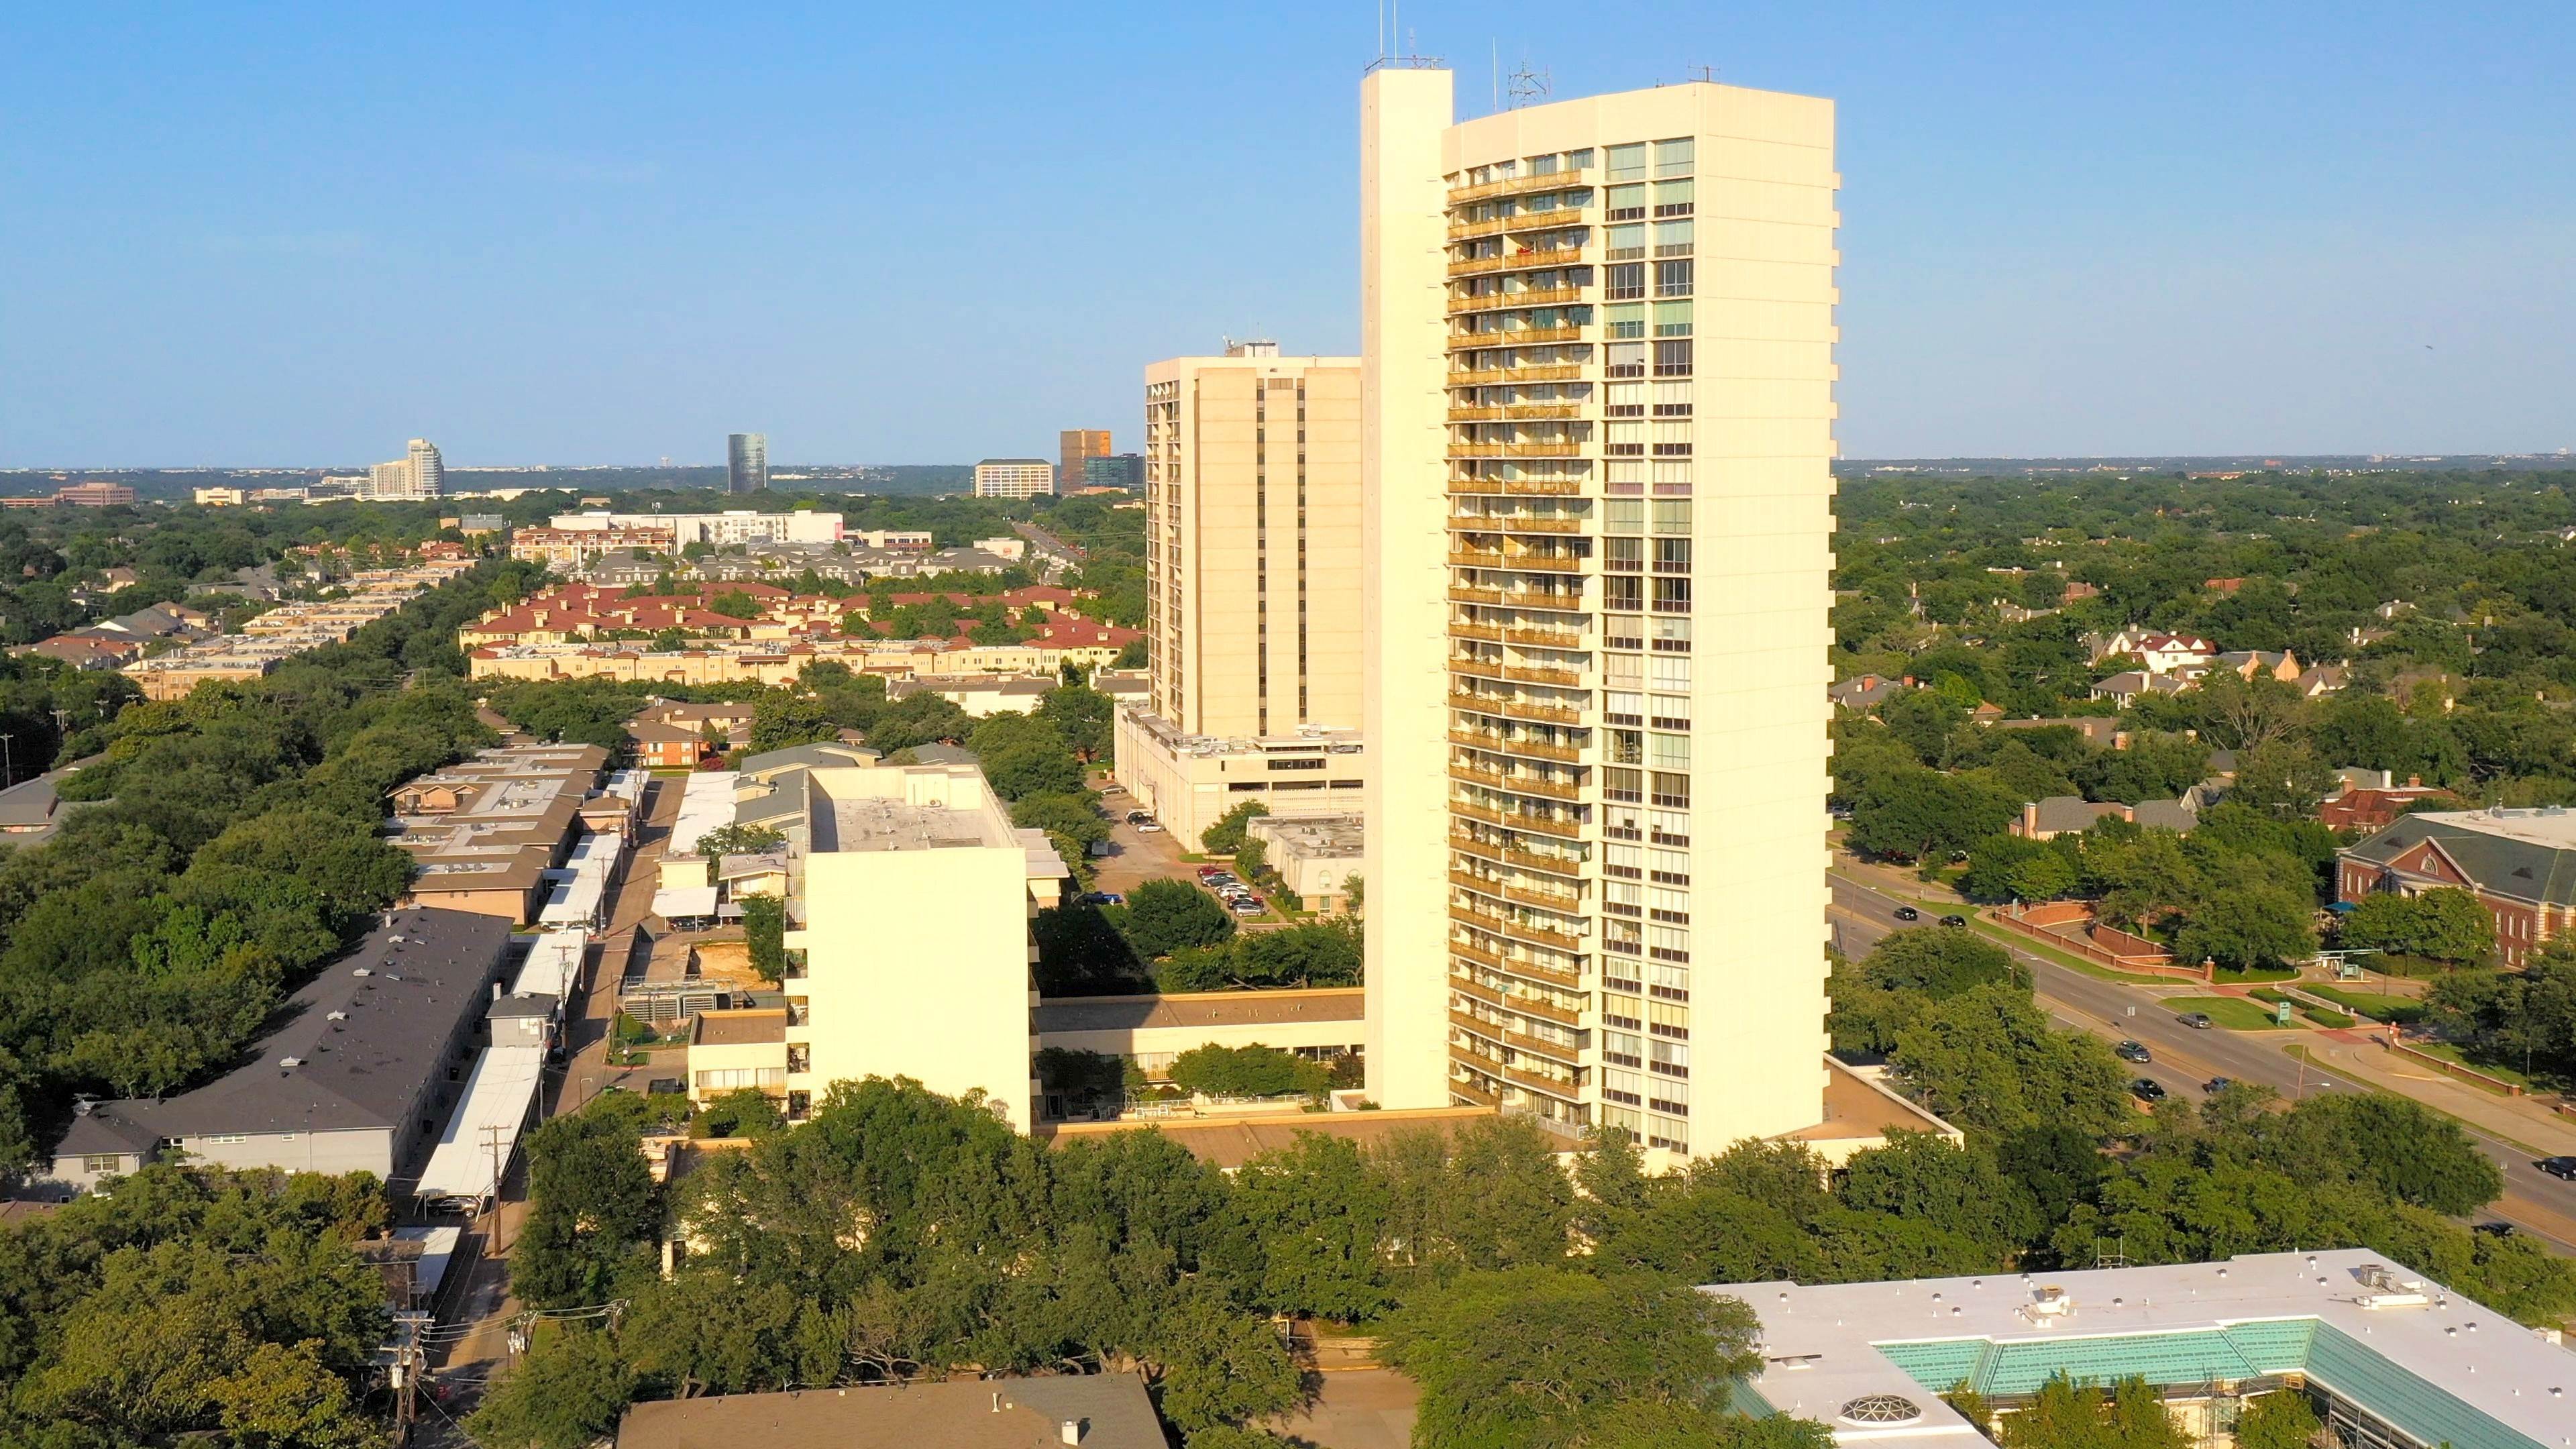 3. Preston Tower building at 6211 W Northwest Hwy, Preston Hollow, Dallas, TX 75225